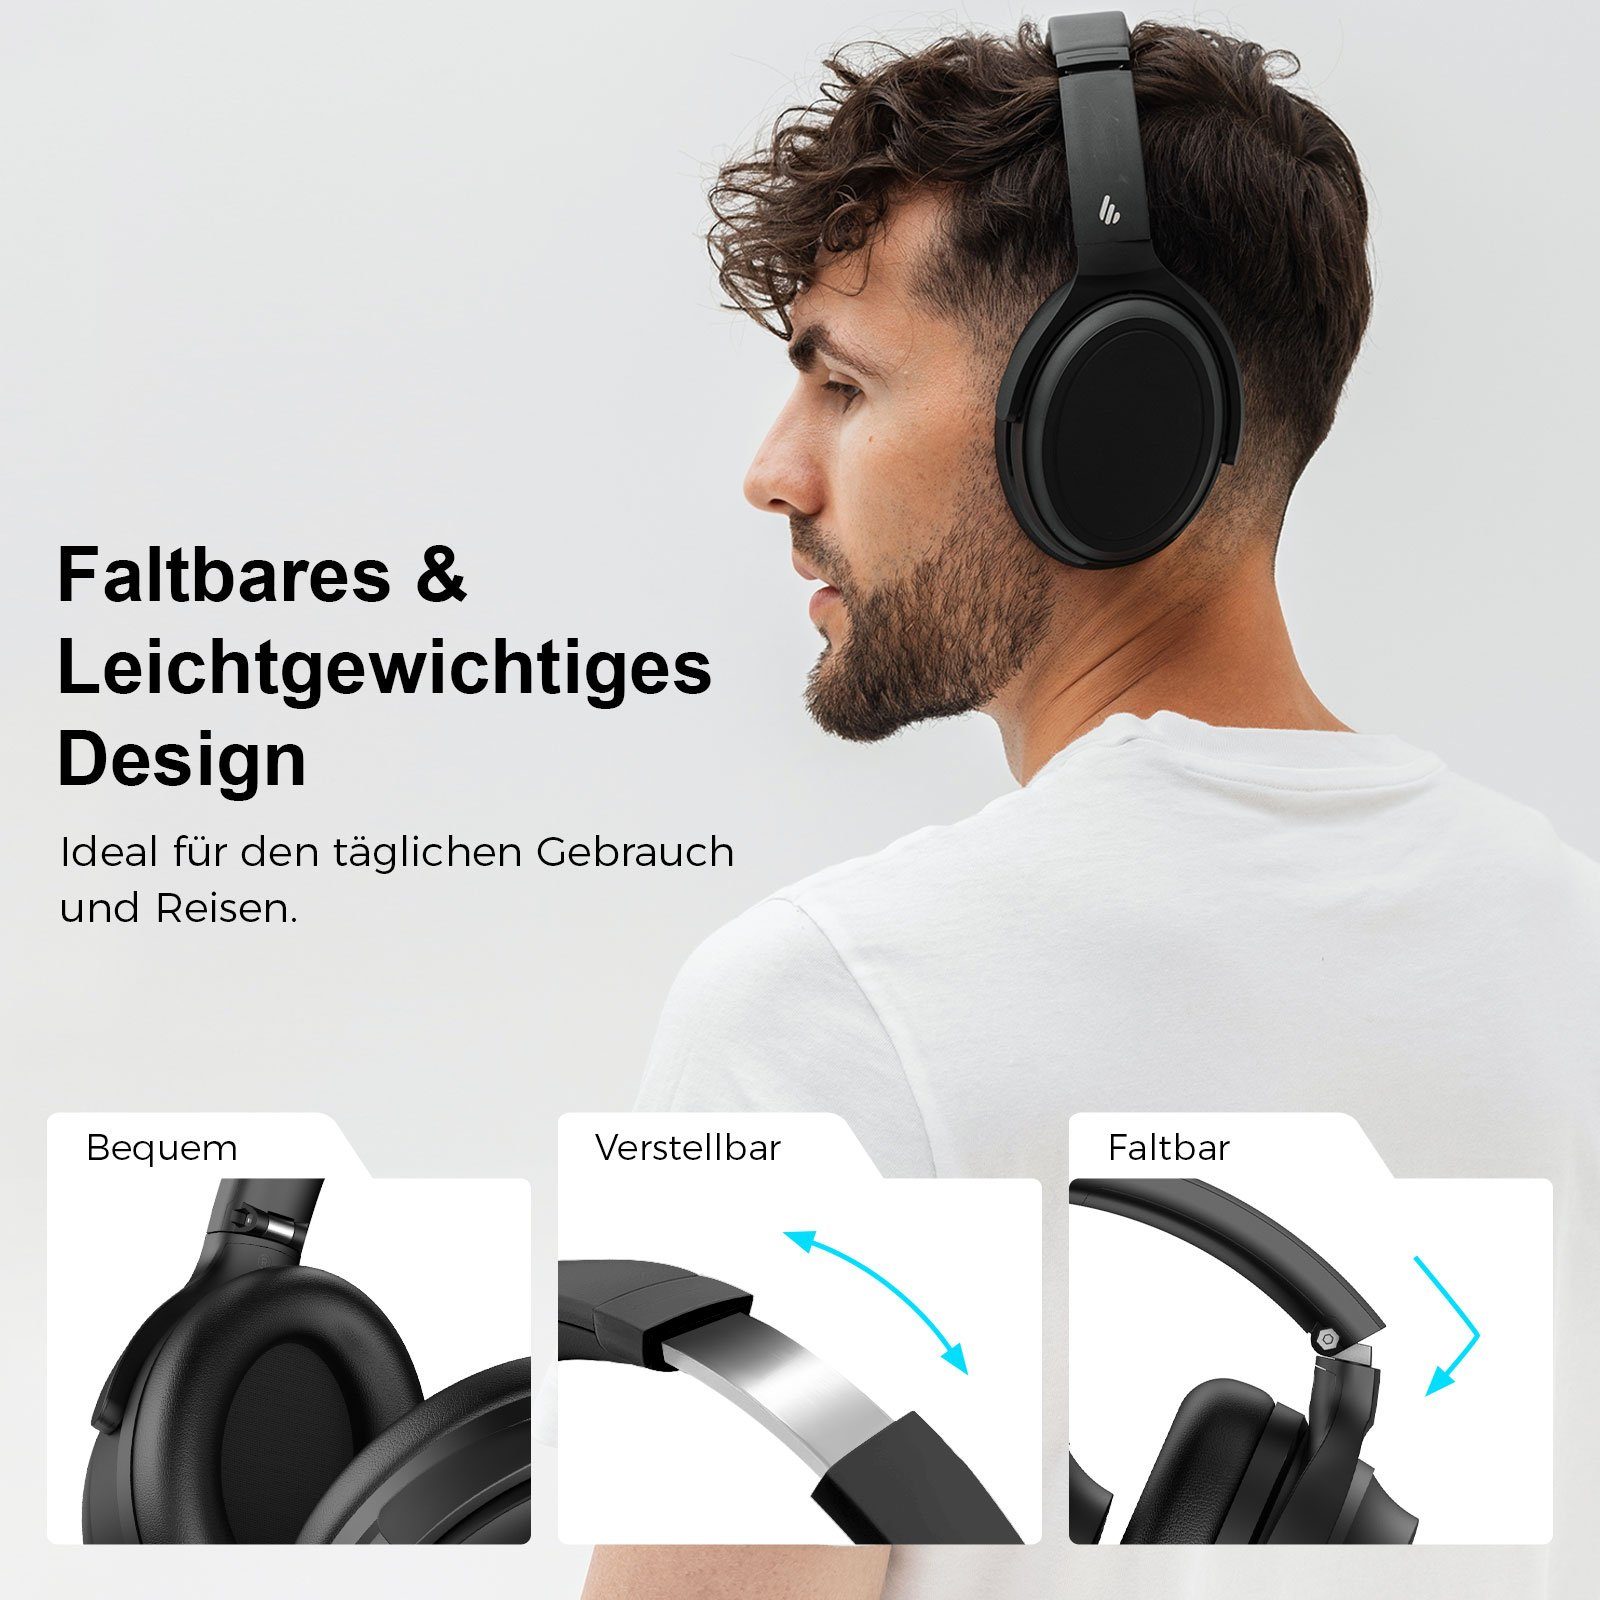 WH700NB Geräuschunterdrückung, Schwarz Geräuschunterdrückung Edifier® Doppelgeräte-Verbindung) Over-Ear-Kopfhörer Kabellose Bluetooth 5.3, aktive (Aktiver